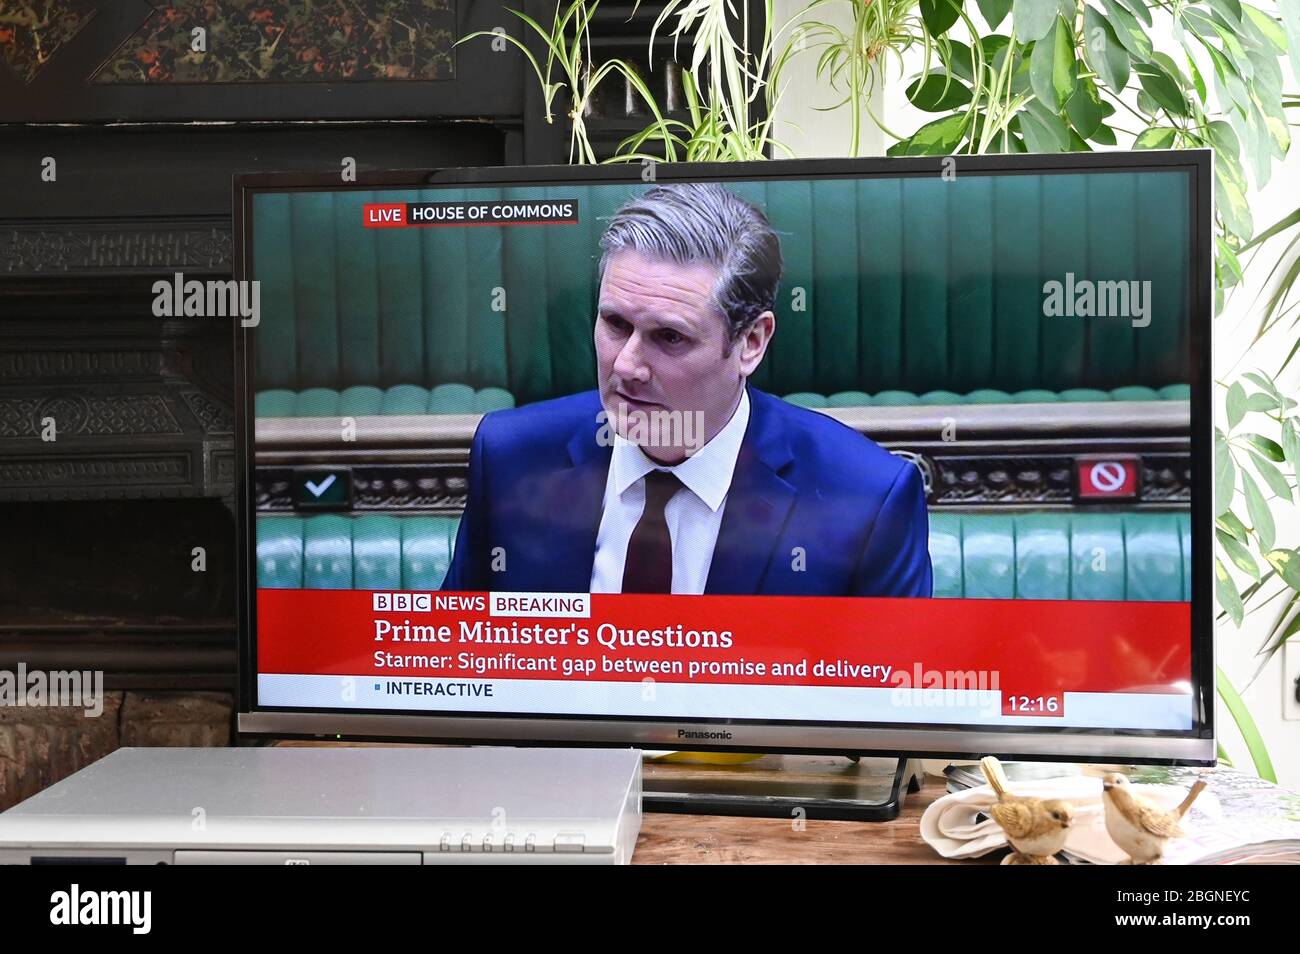 Dominic Raab, primer Ministro "de la "ciudad", respondiendo a las preguntas sobre las pruebas de Covid del nuevo líder del Partido Laborista Sir Keir Starmer en las PMQs. Foto de stock